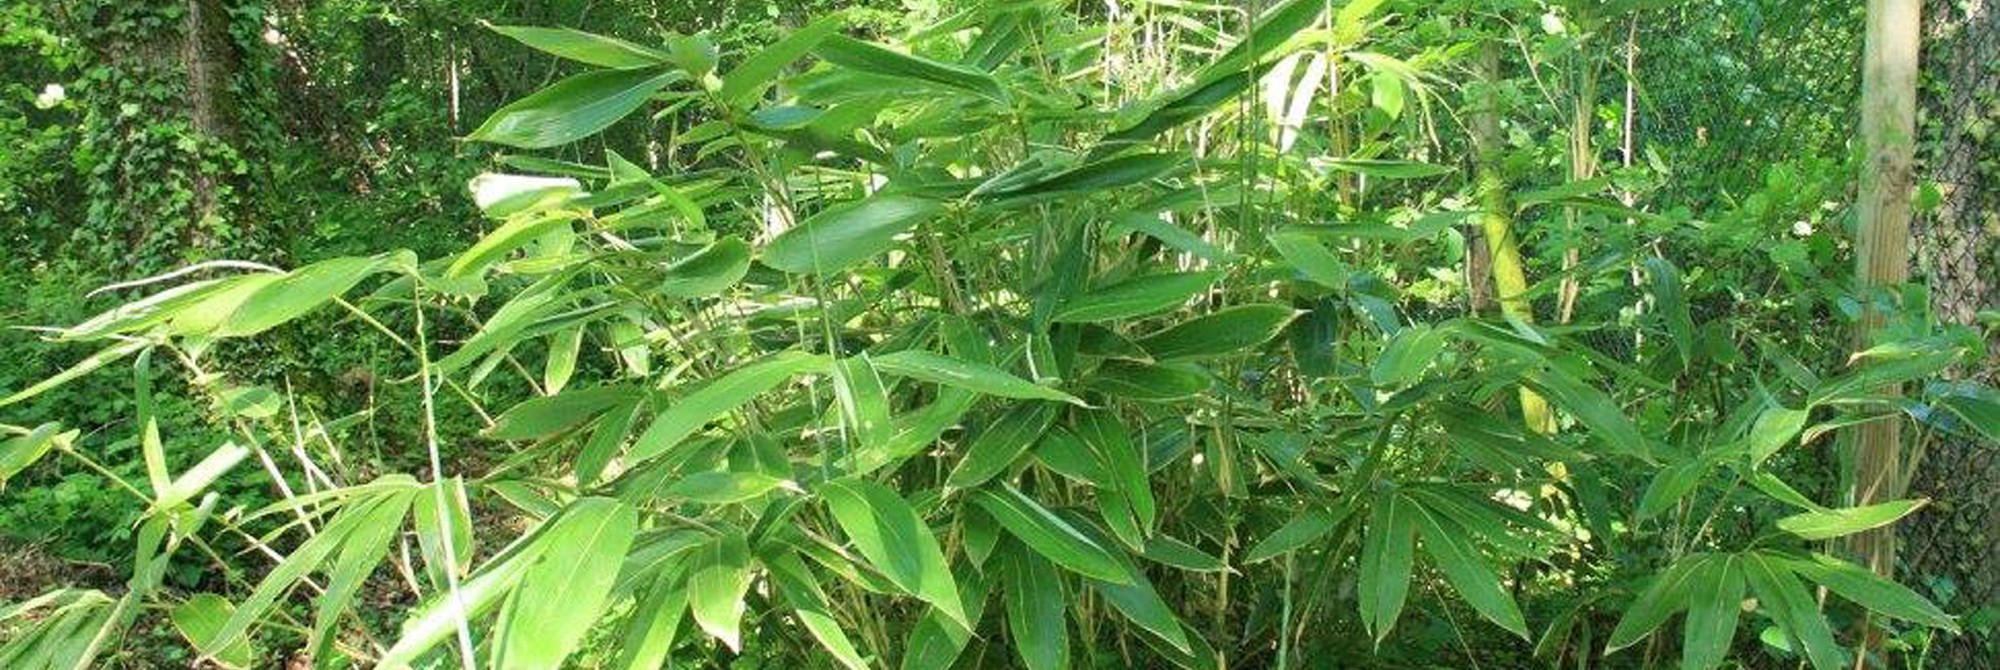 Bambous grandes feuilles